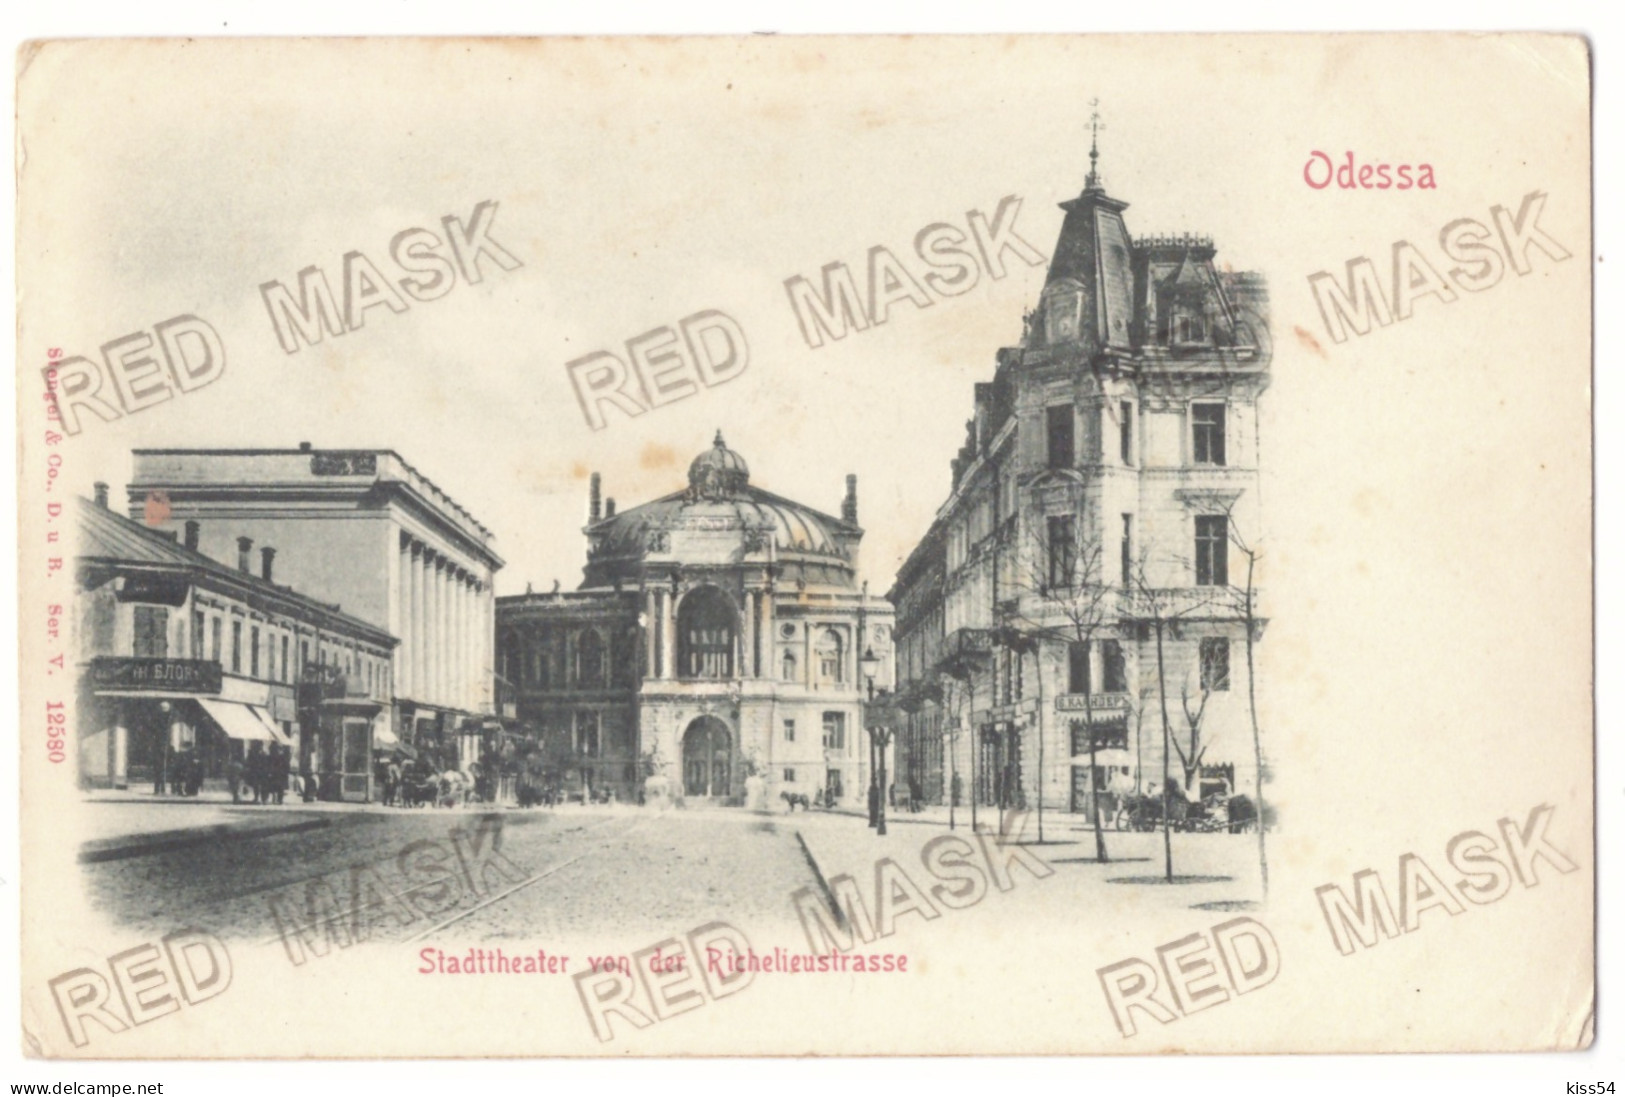 UK 68 - 24211 ODESSA, Theatre, Ukraine - Old Postcard, EMBOSSED - Unused - Ukraine